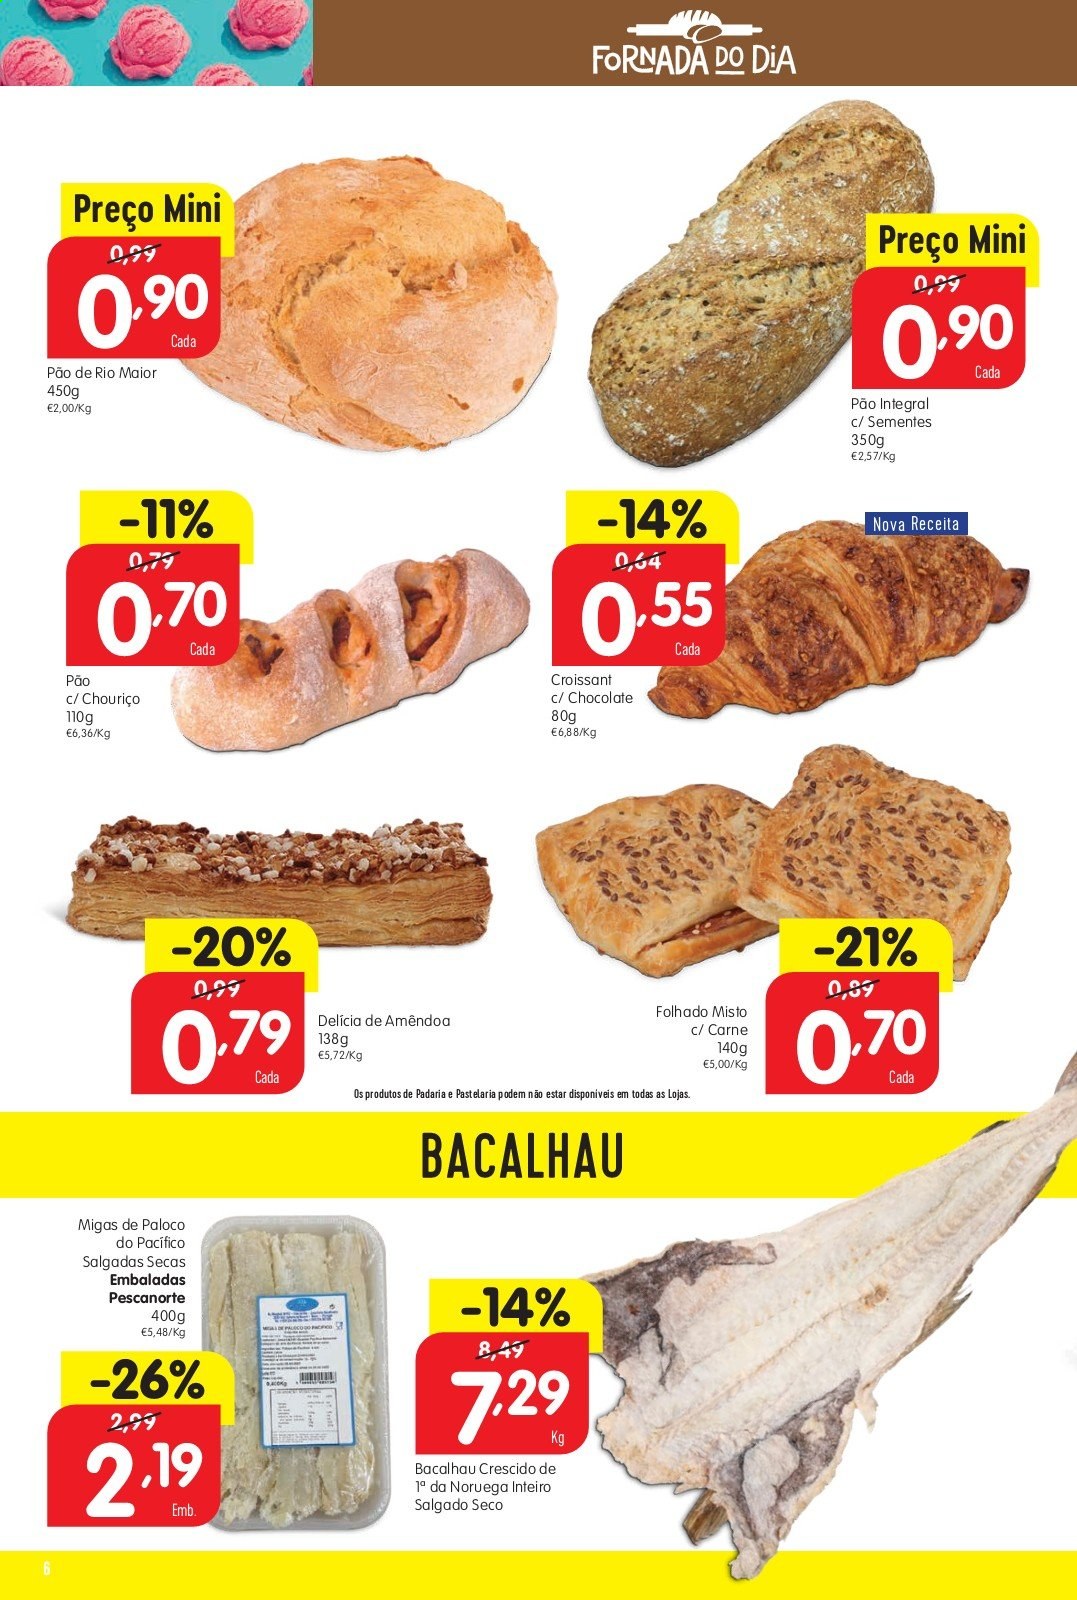 thumbnail - Folheto Minipreço - 15.7.2021 - 21.7.2021 - Produtos em promoção - pão, folhado misto, croissant, bacalhau, paloco, chouriço. Página 6.